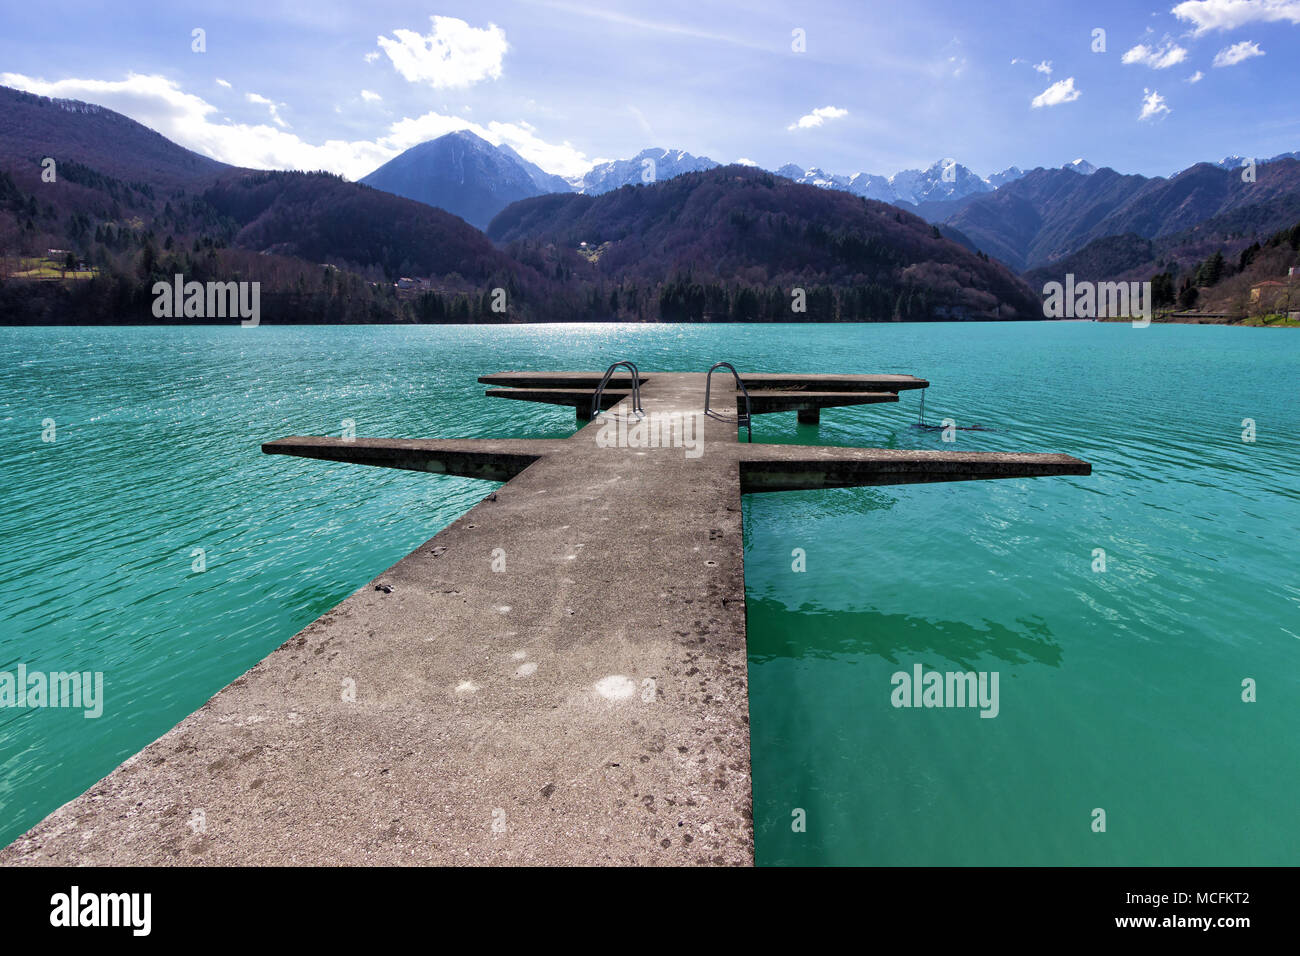 L'Italia, Valcellina. Vista del lago di Barcis di acqua cristallina circondata da monti all'orizzonte Foto Stock